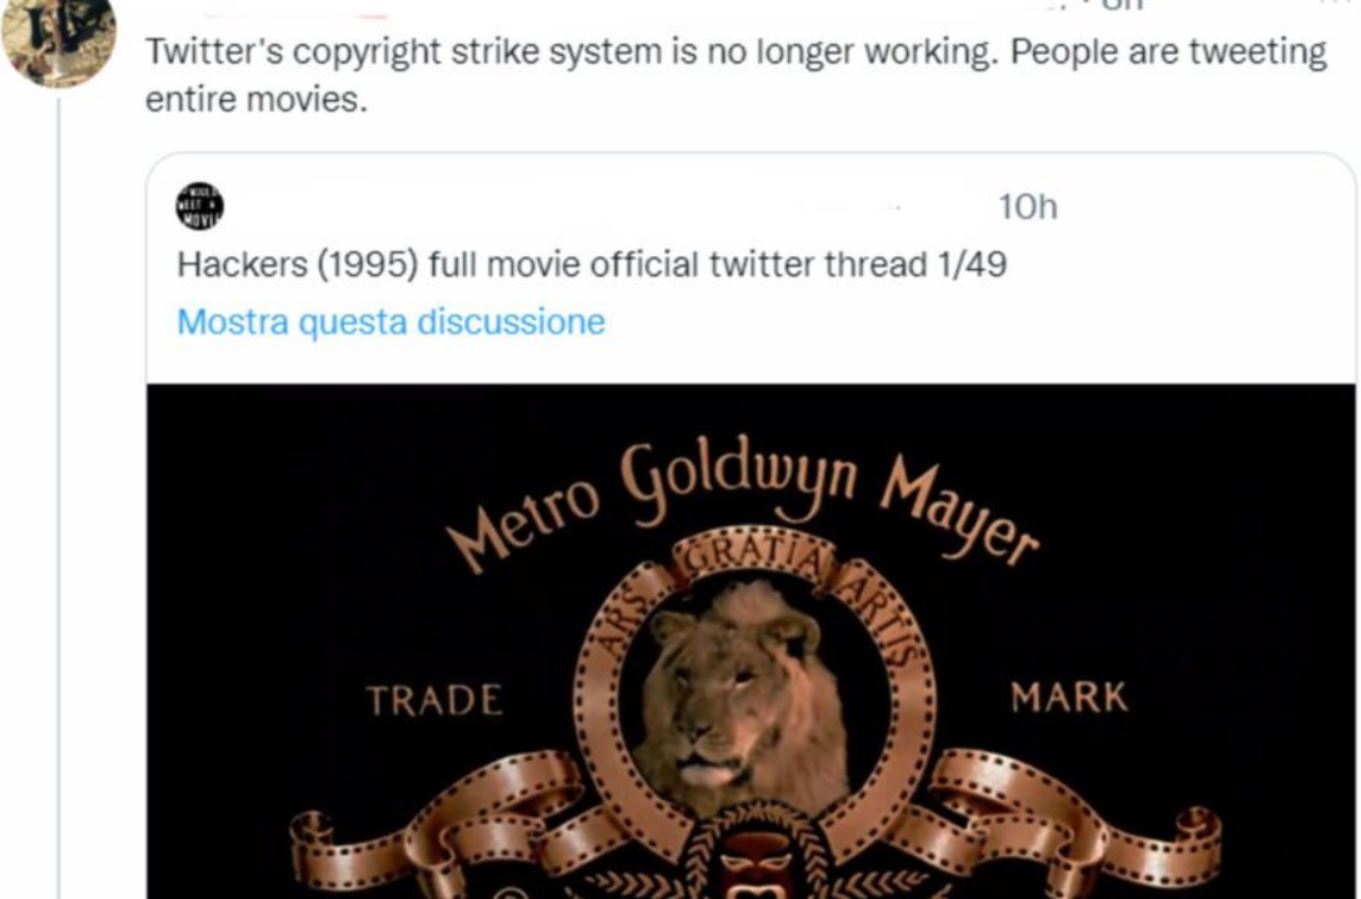 Während die bestehenden Probleme bei Twitter noch nicht behoben sind, ist nun das Urheberrechtssystem der Plattform zusammengebrochen.